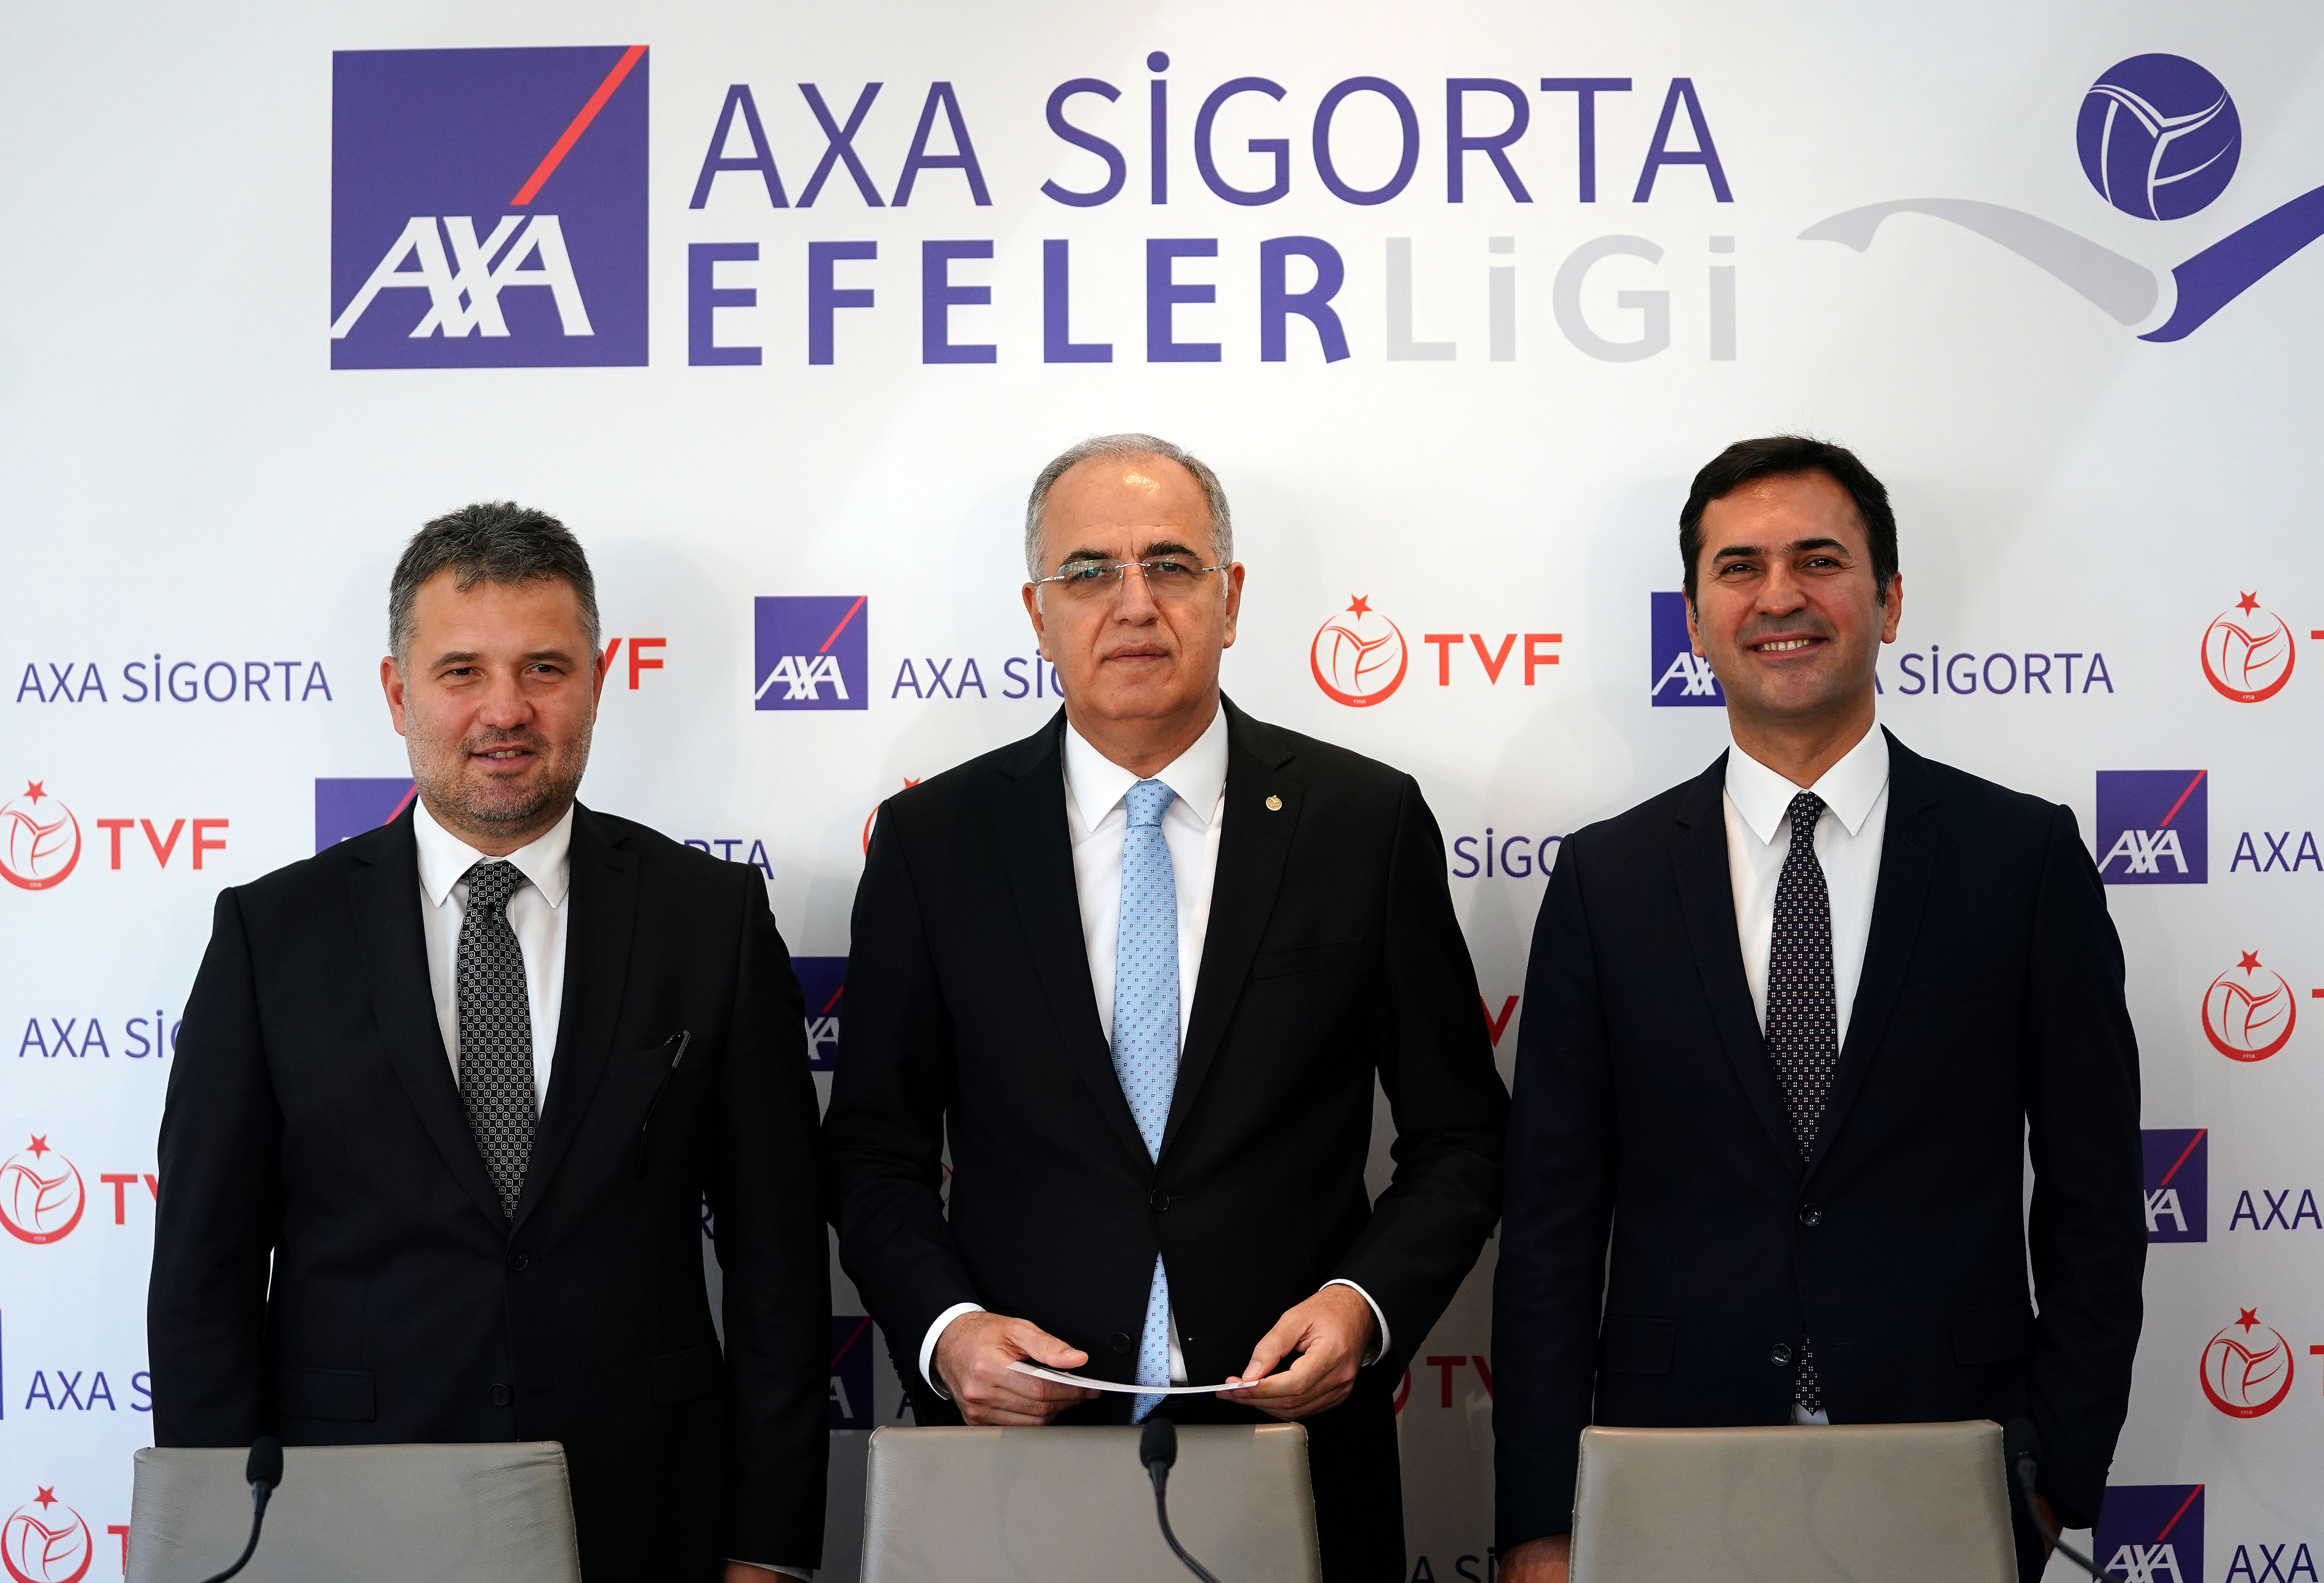 AXA Sigorta, Efeler Ligi’nin isim sponsoru oldu-742 etkinliği yapıldı